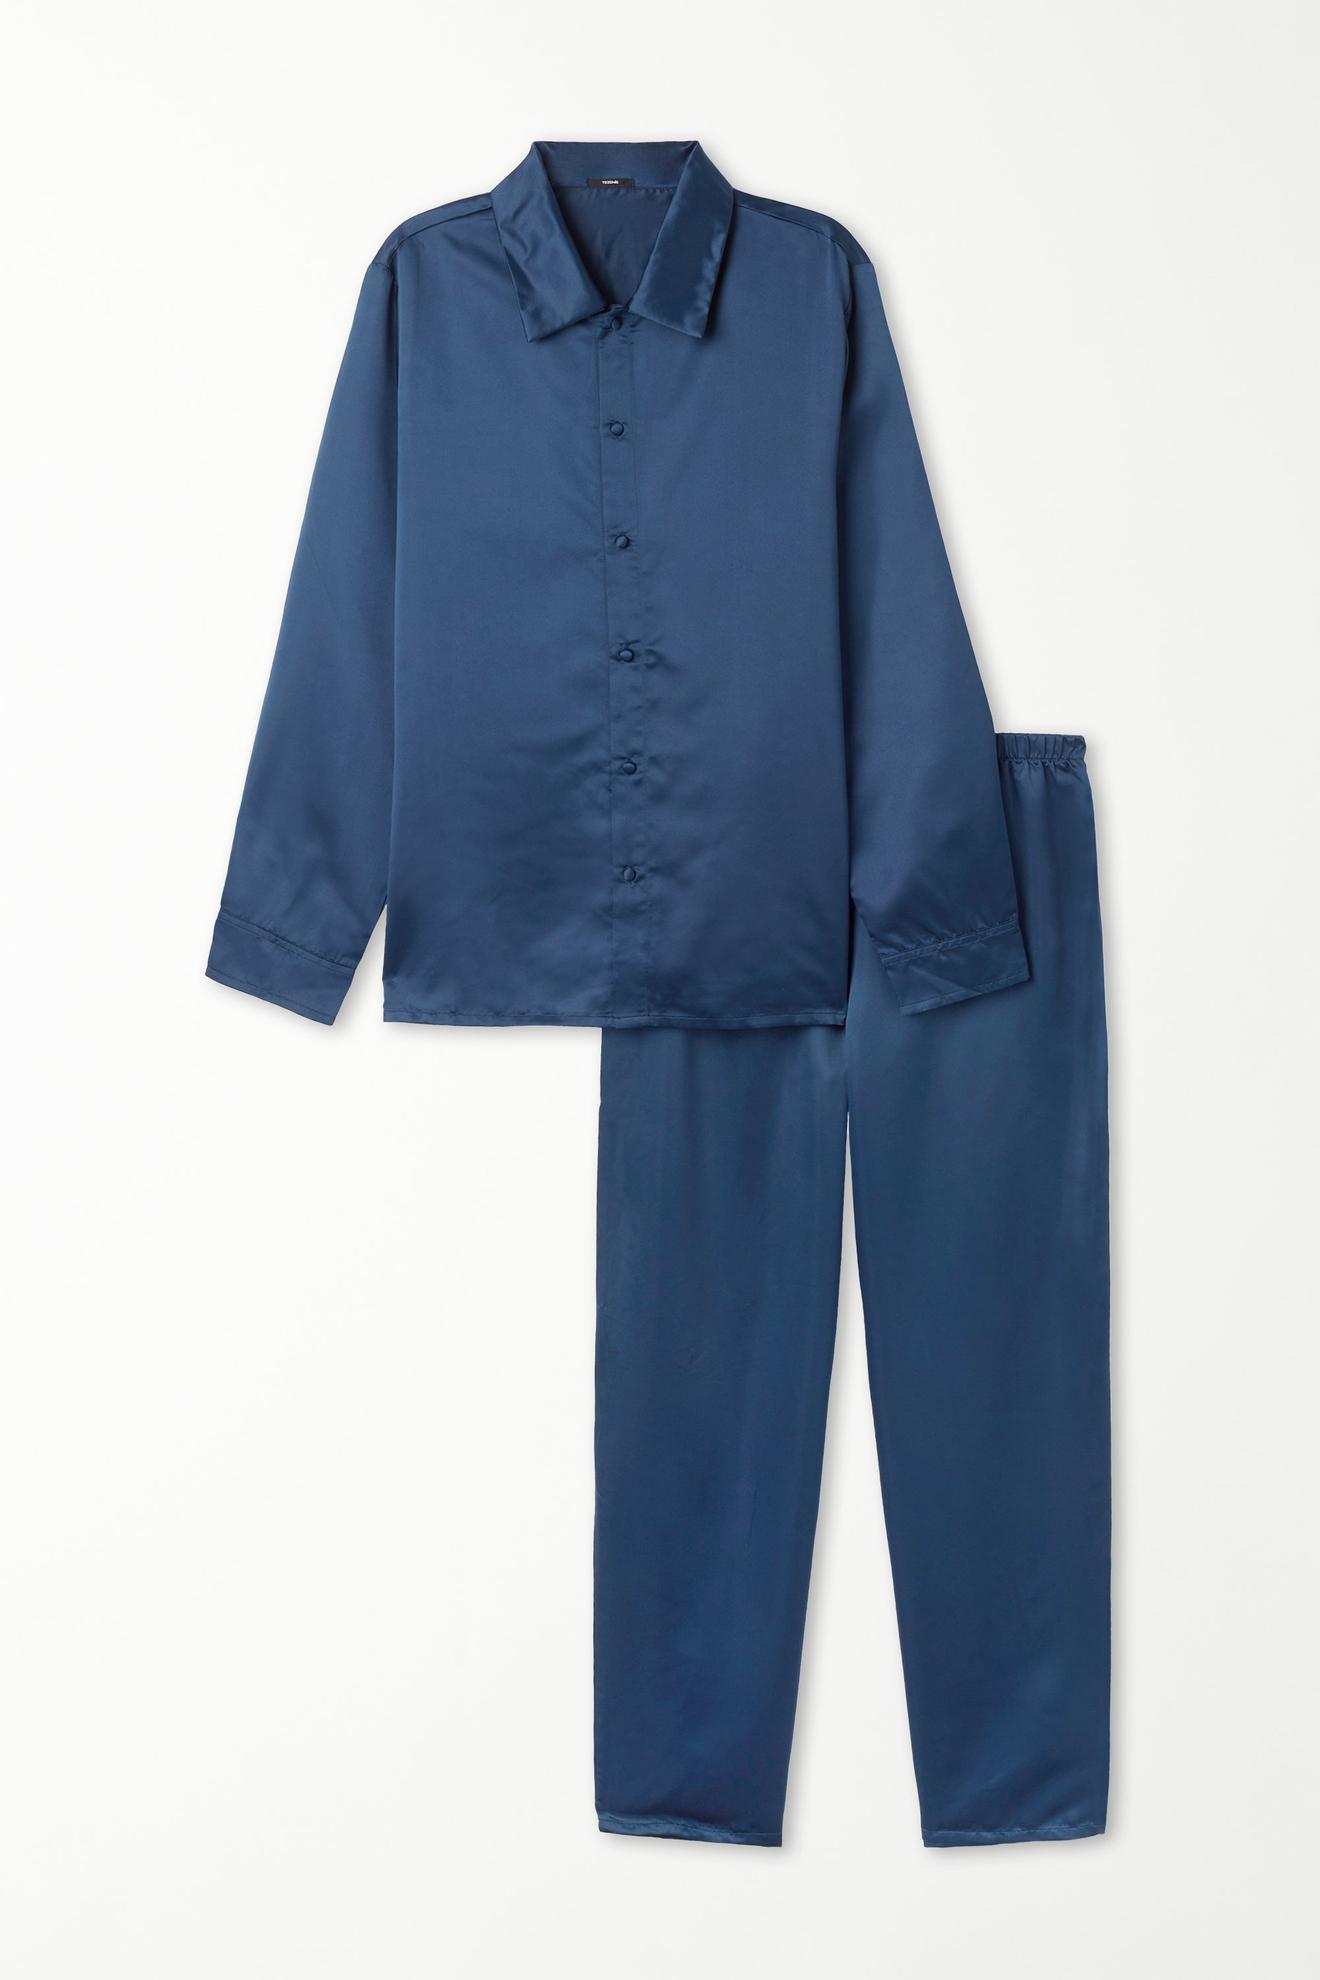 Langer Pyjama aus Satin für 32,99€ in Tezenis